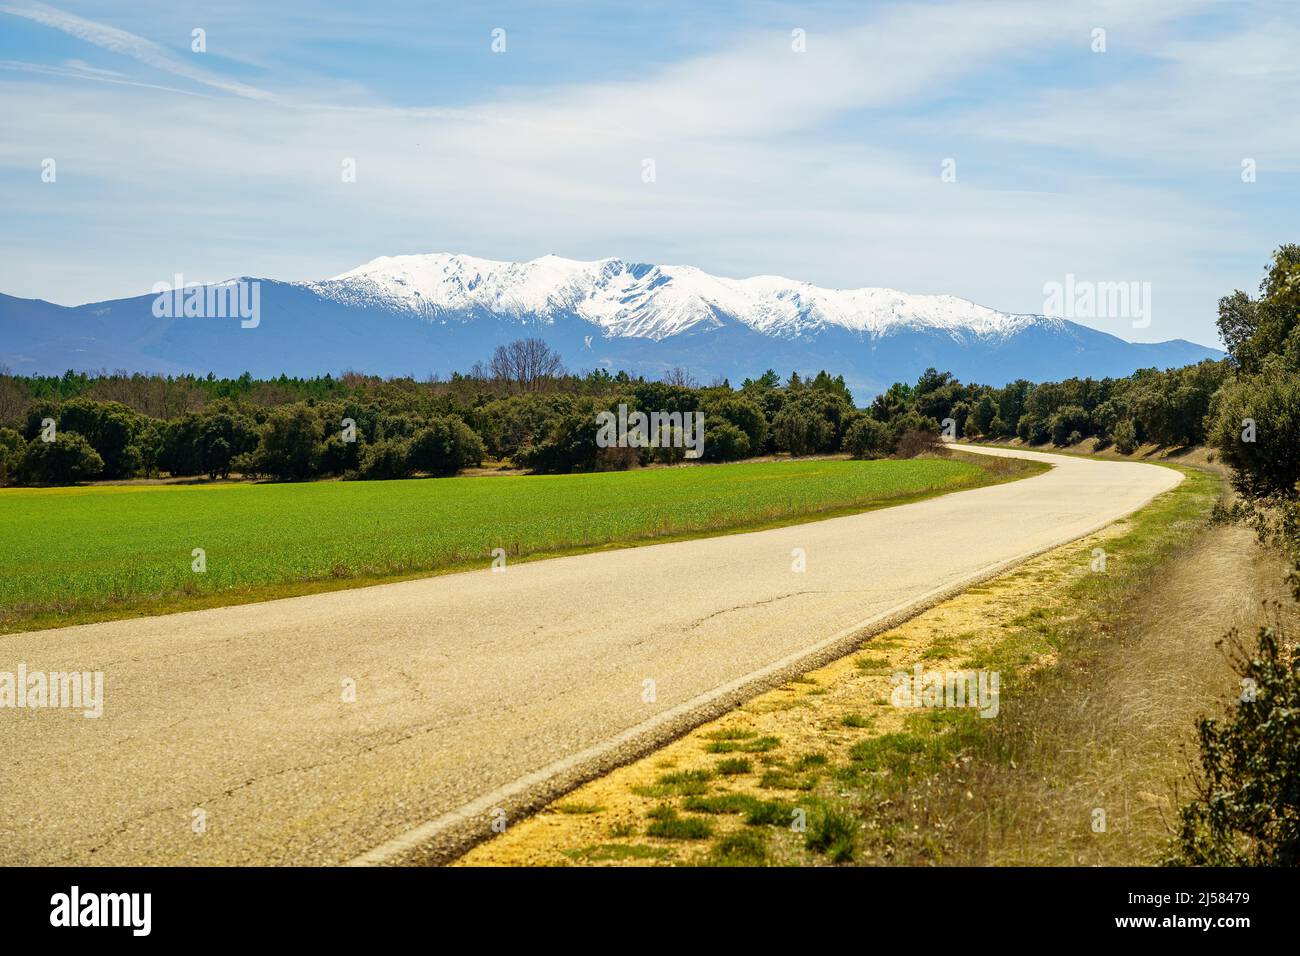 Strada secondaria che conduce alle montagne innevate in un verde paesaggio estivo. La Pinilla, Spagna. Foto Stock